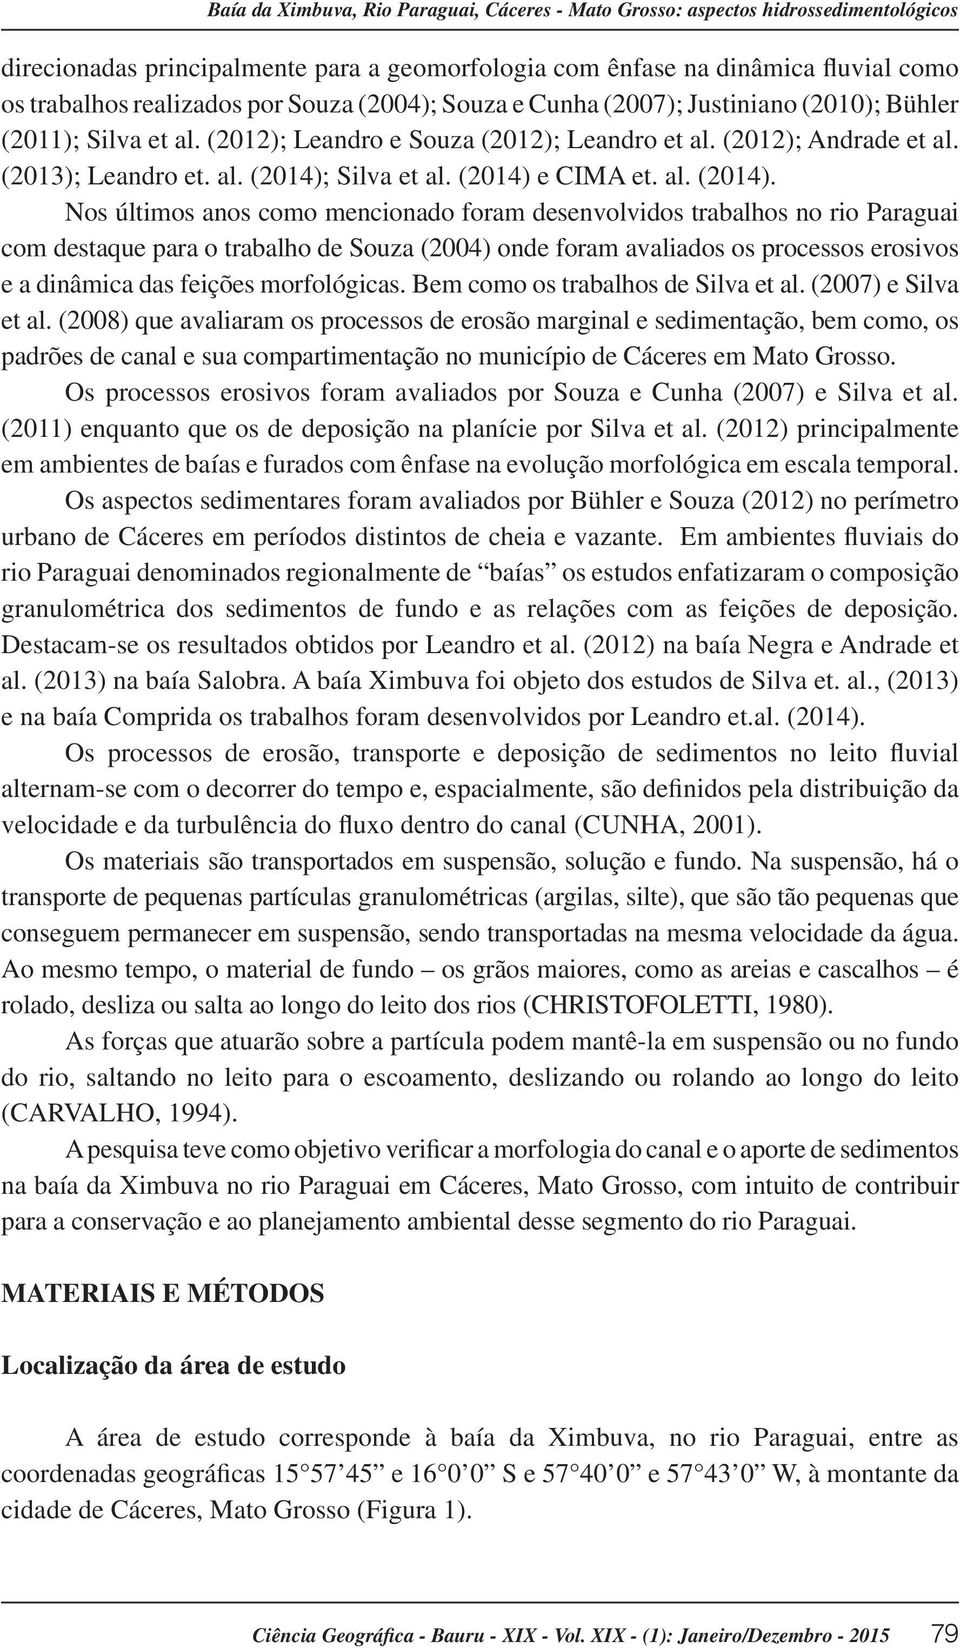 (2014) e CIMA et. al. (2014).